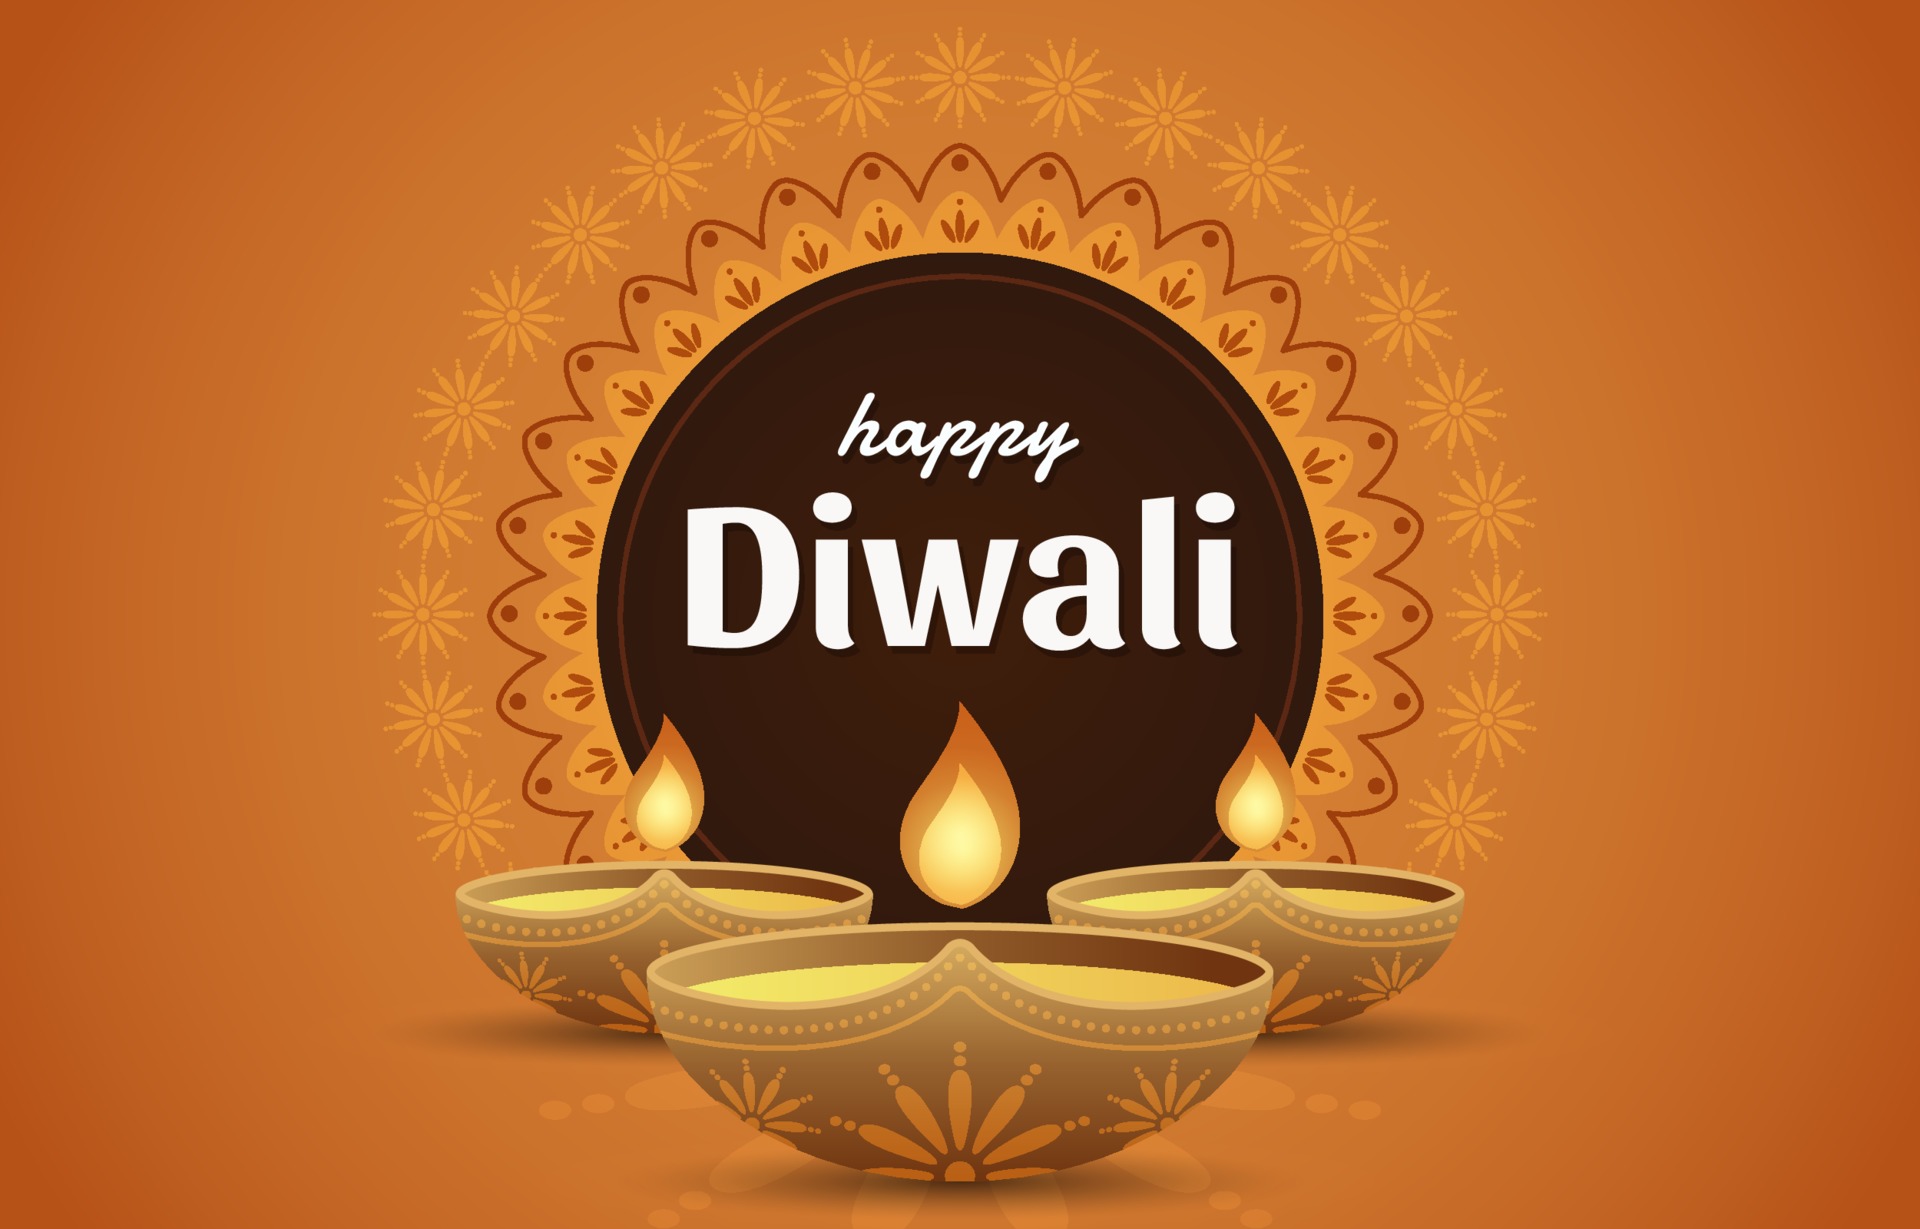  Happy Diwali Wallpaper Download free  Images SRkh